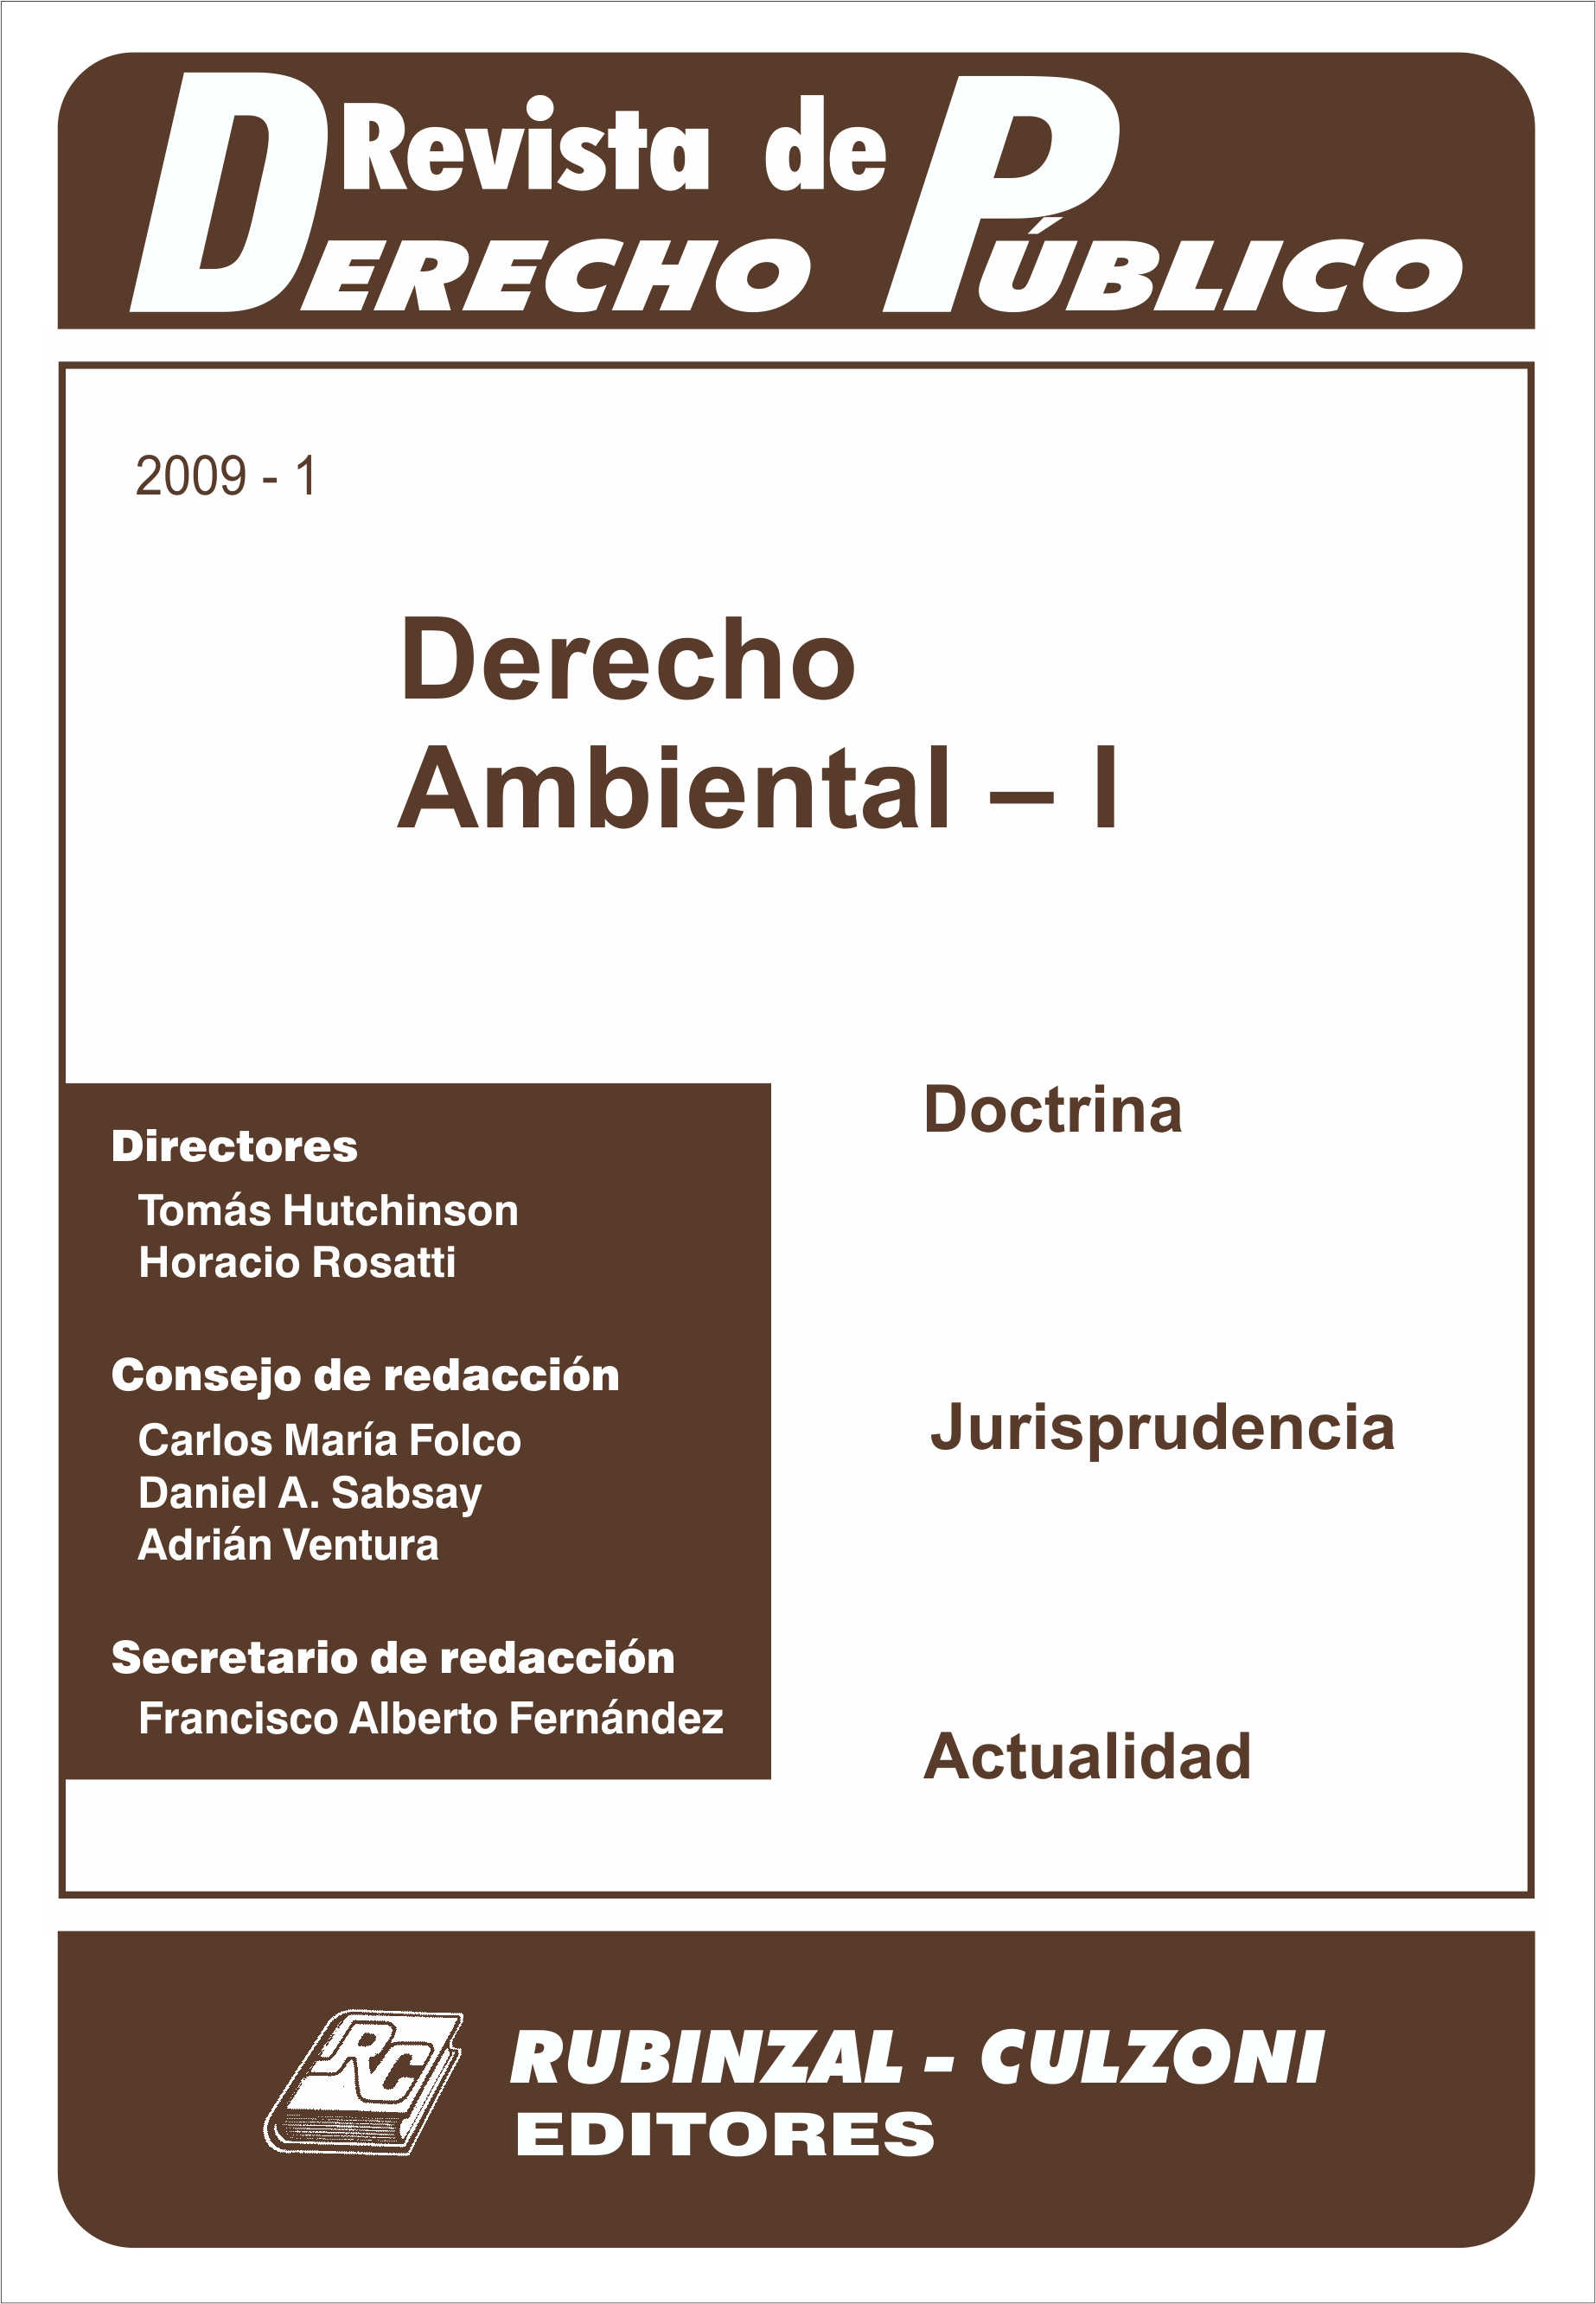 Revista de Derecho Público - Derecho Ambiental - I